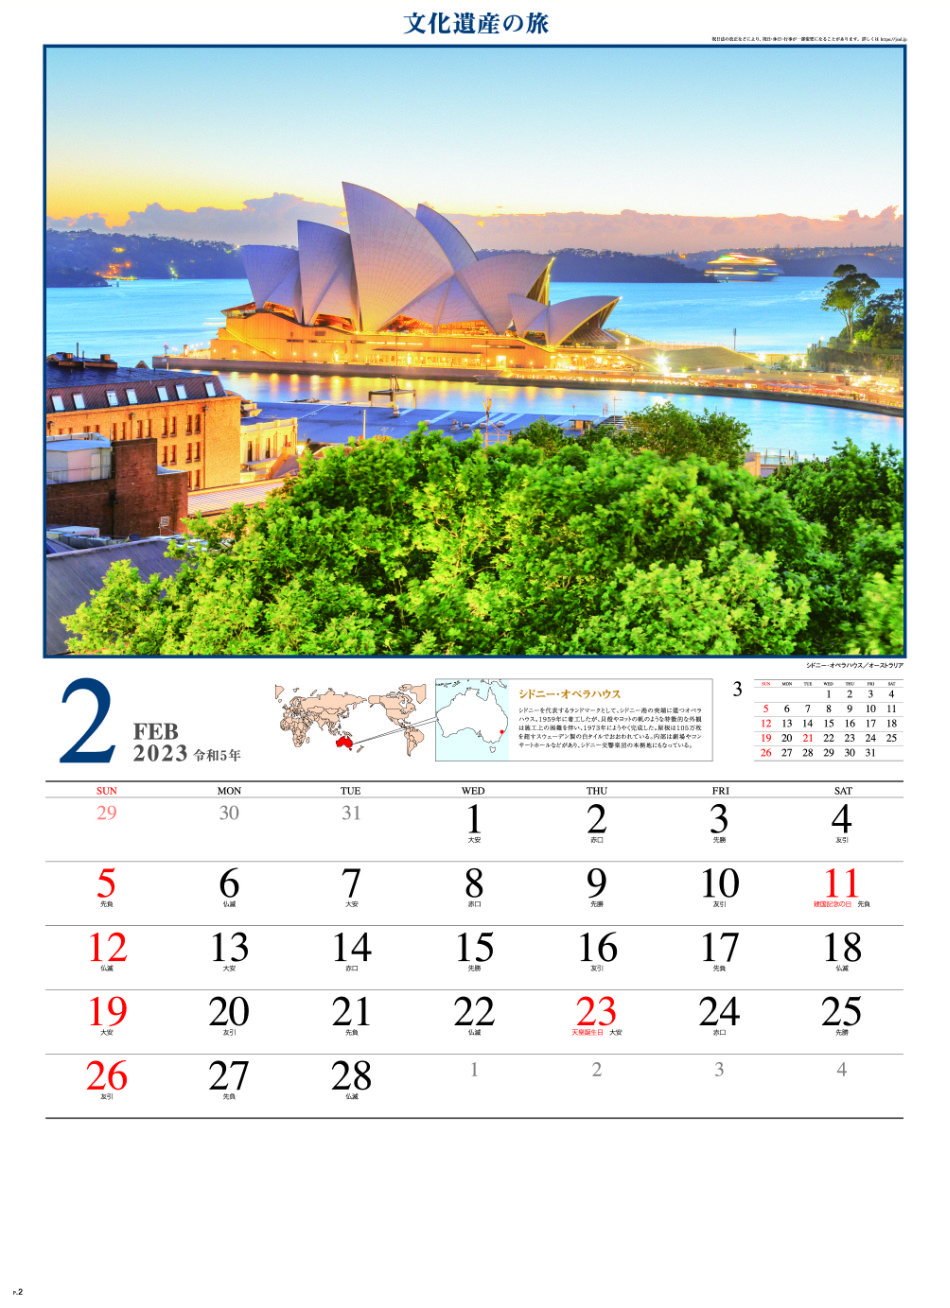 2月 シドニー・オペラハウス(オーストラリア) 文化遺産の旅(ユネスコ世界遺産） 2023年カレンダーの画像